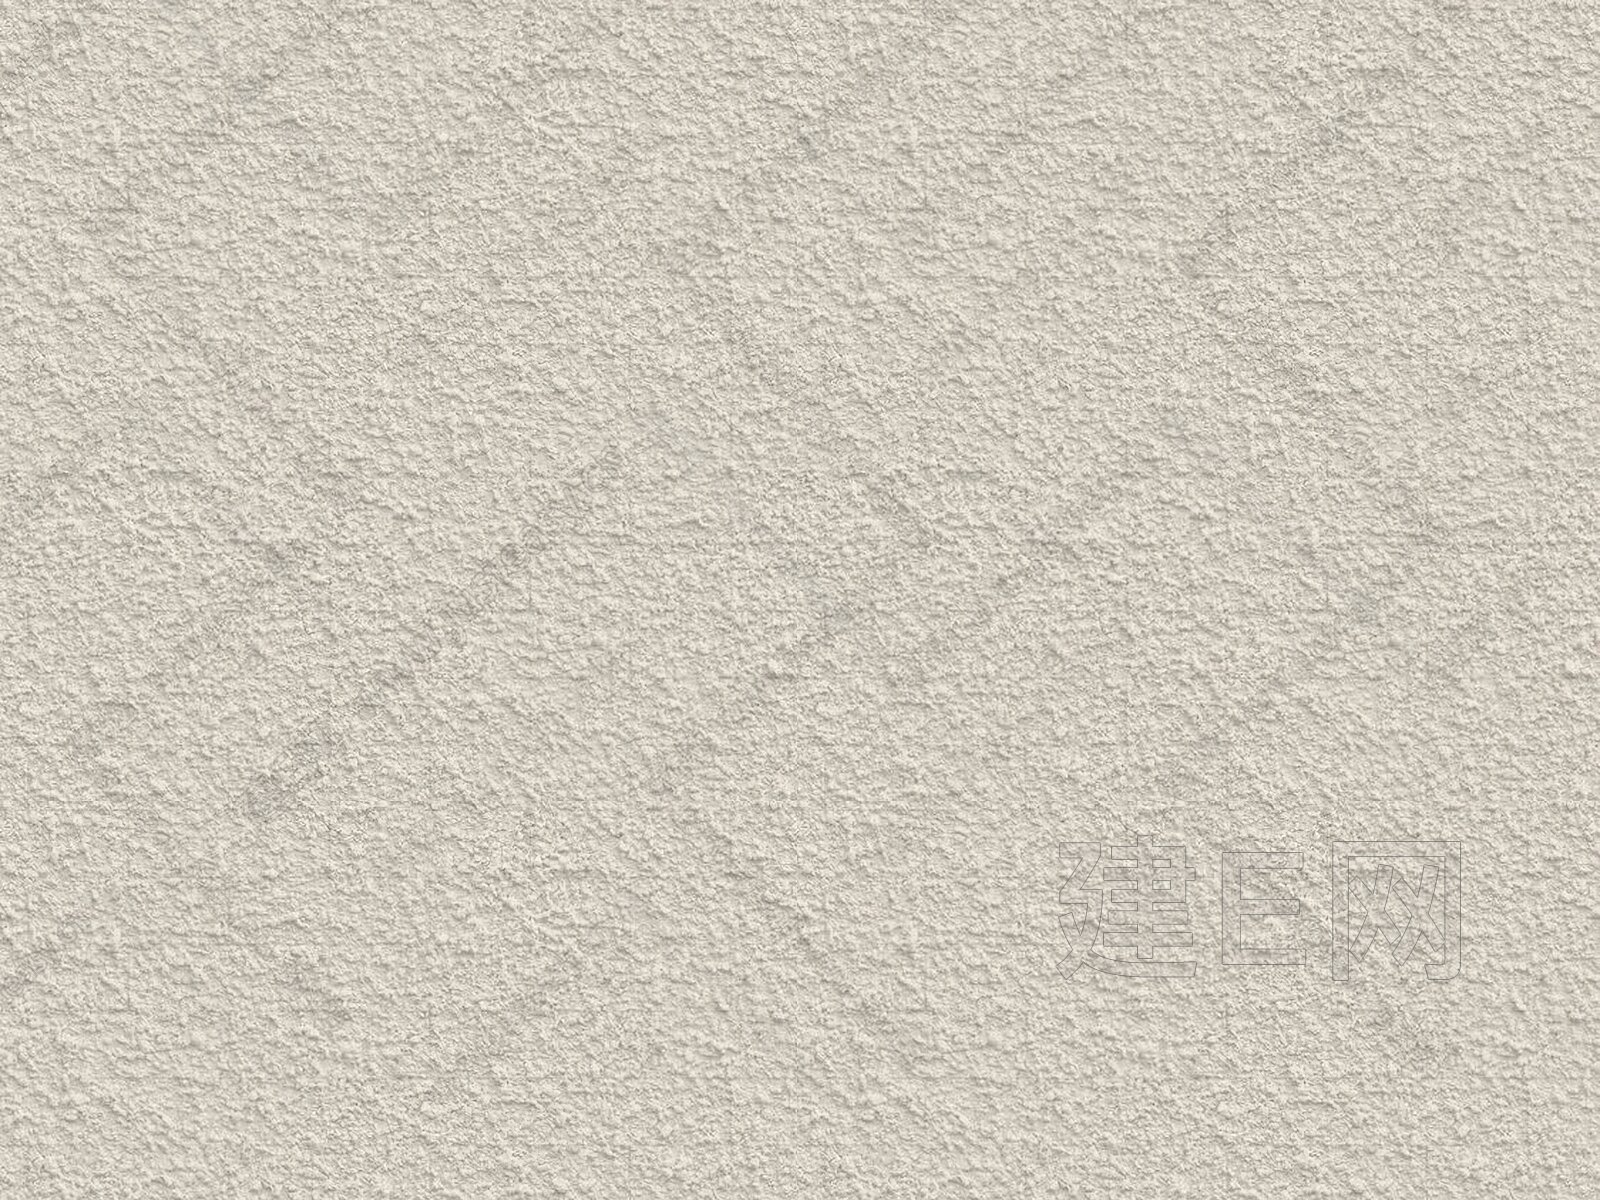 01肌理漆墙面涂料肌理漆石膏板墙面 土墙材质贴图下载-【集简空间】「每日更新」